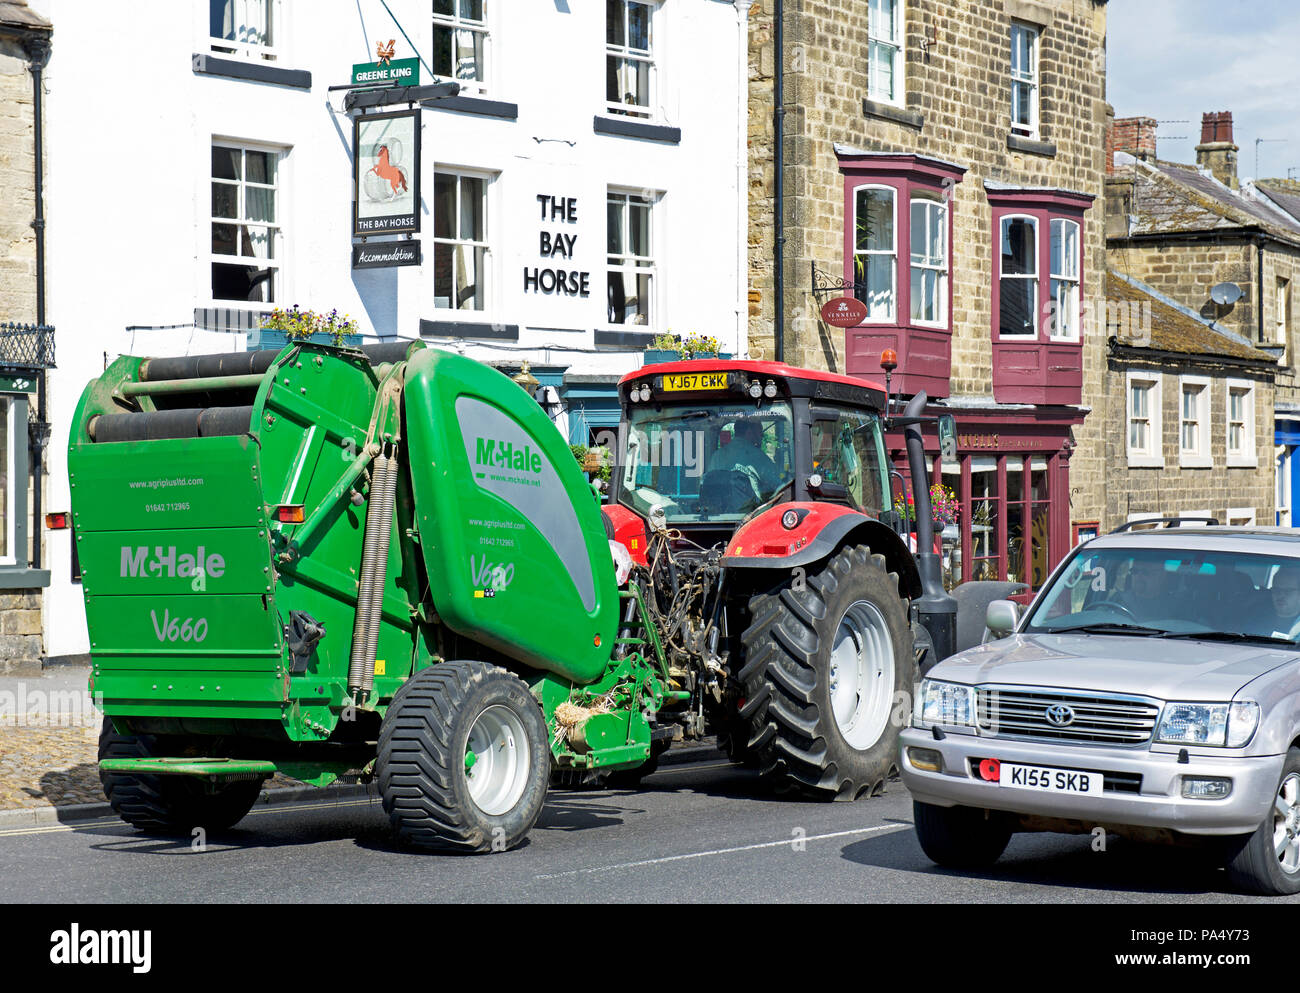 Traktor vorbei an der Bay Horse Pub, Masham, North Yorkshire, England, Großbritannien Stockfoto